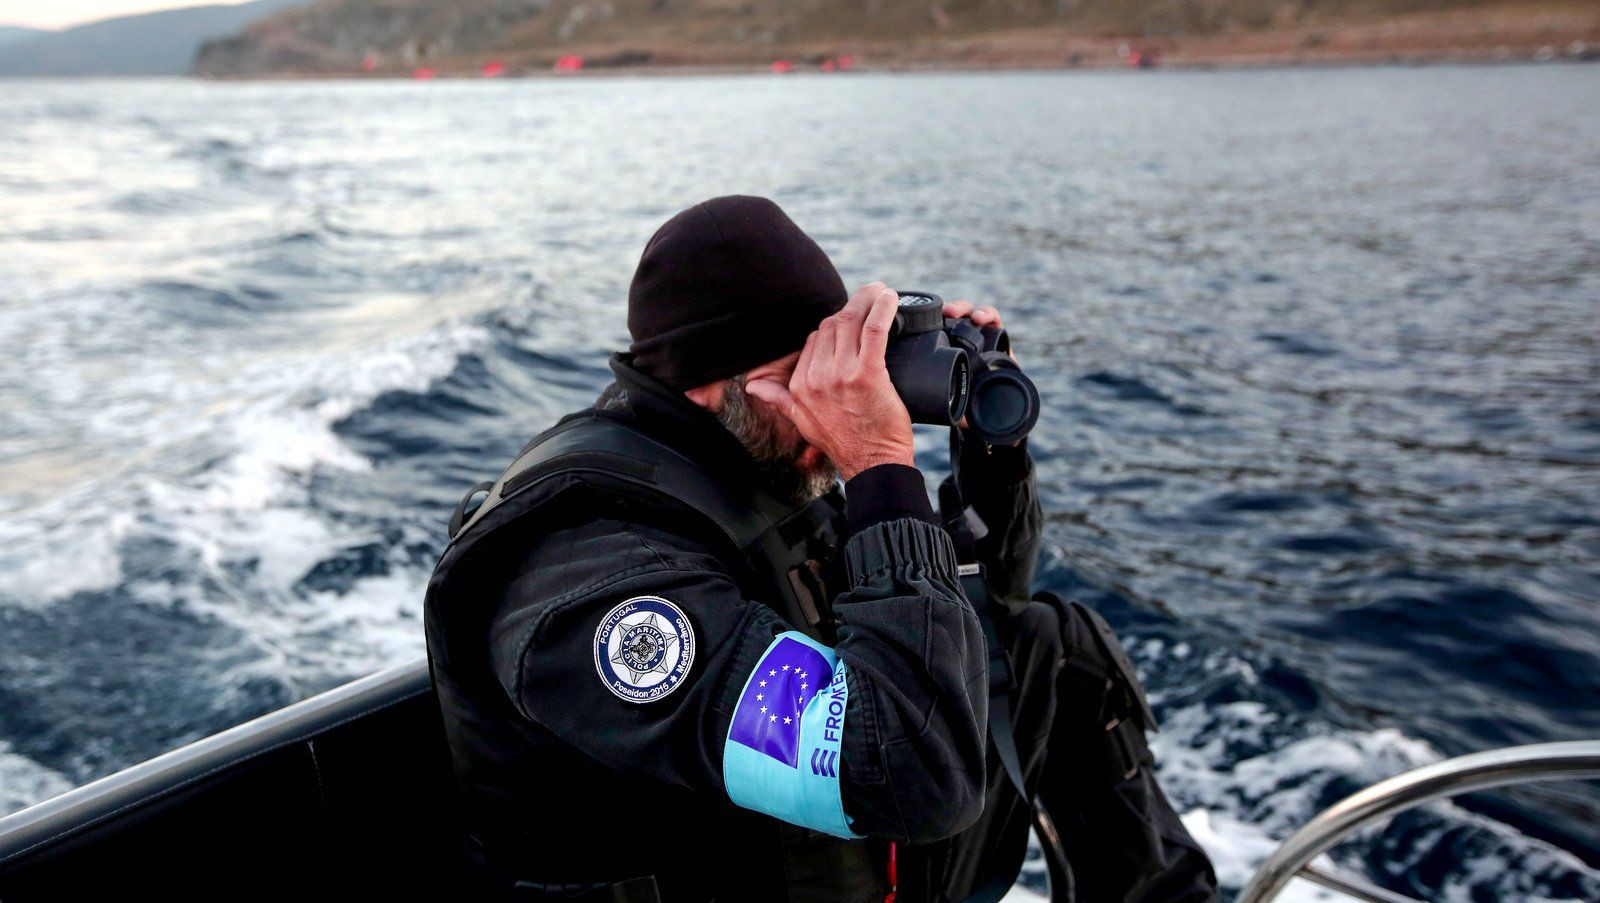 Τραμπουκισμοί σε ηλικιωμένο από υπάλληλο της Frontex